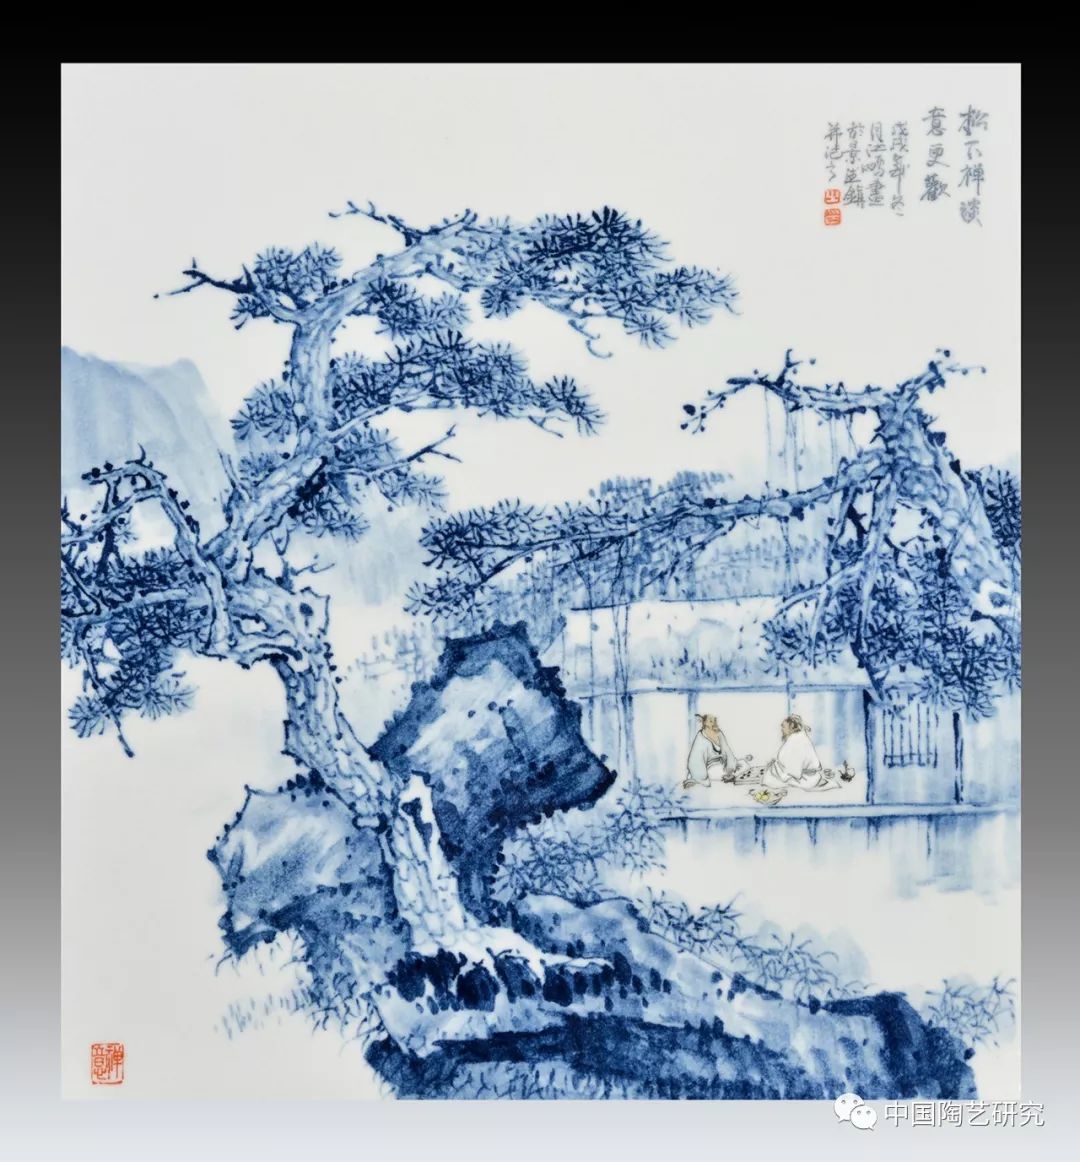 江鹏,1984年生于上饶.毕业于景德镇陶瓷大学艺术设计专业,获学士学位.